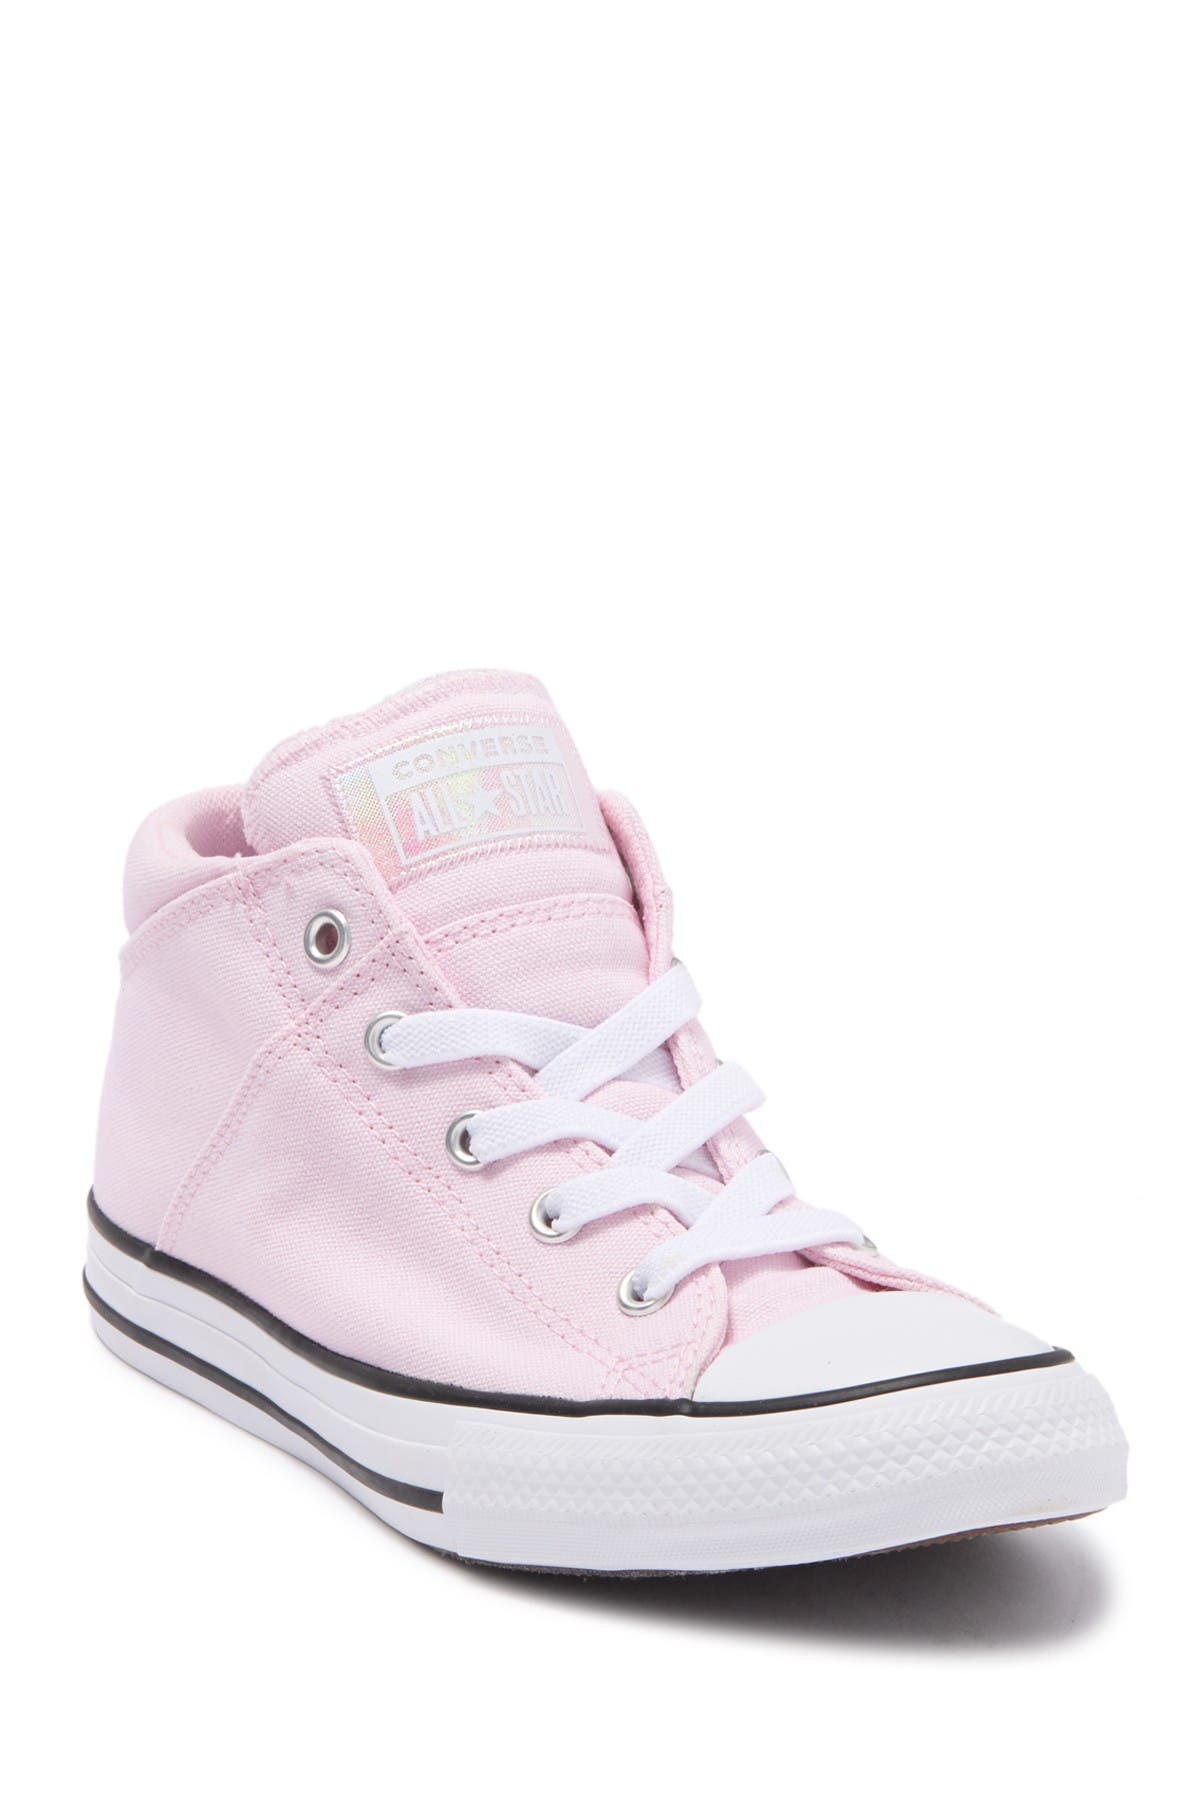 pink converse toddler